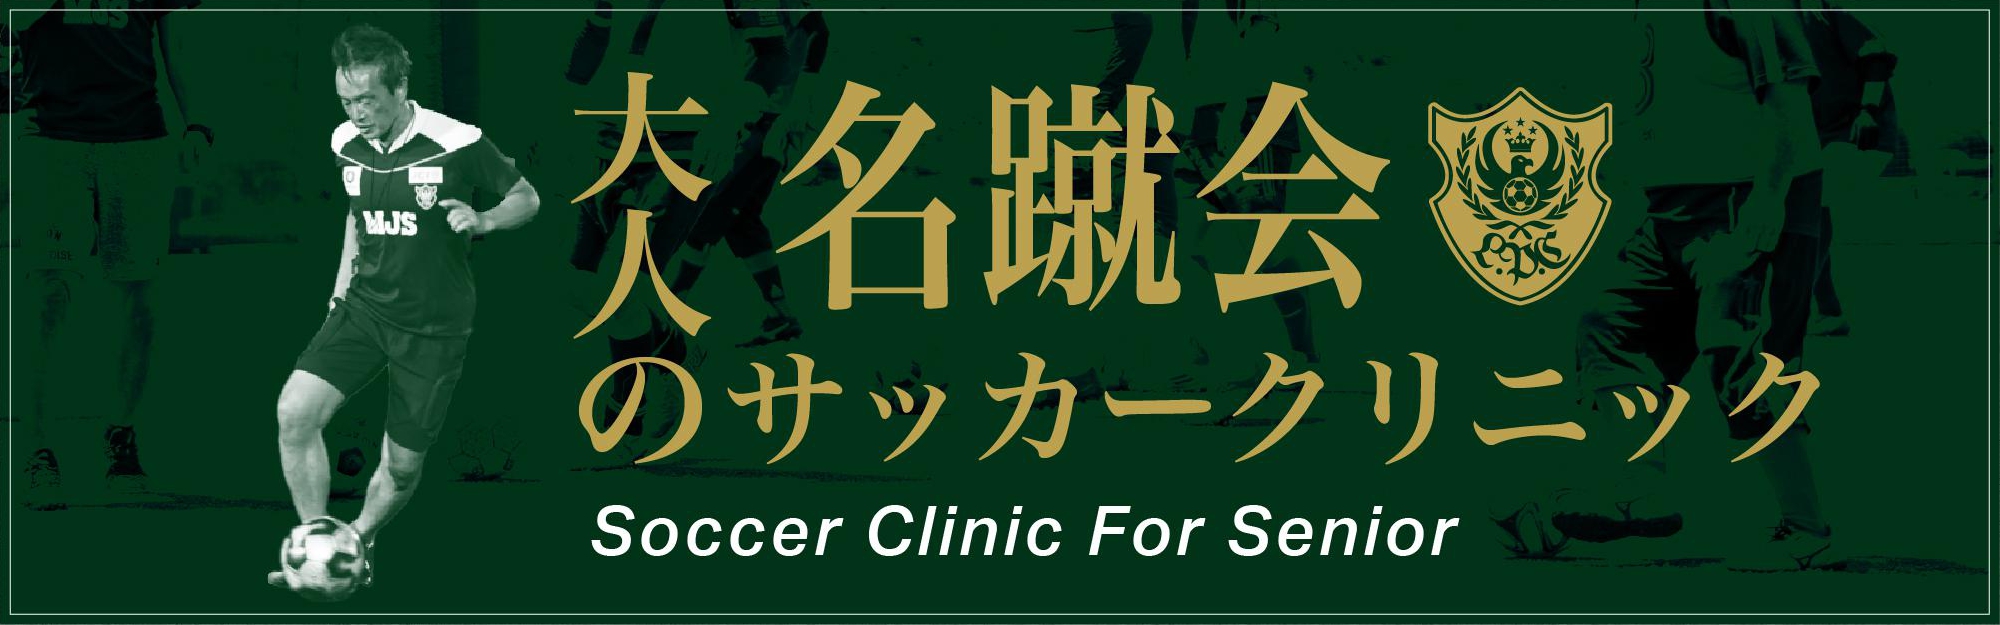 一般社団法人 日本サッカー名蹴会 公式サイト 名蹴会 大人のサッカークリニック